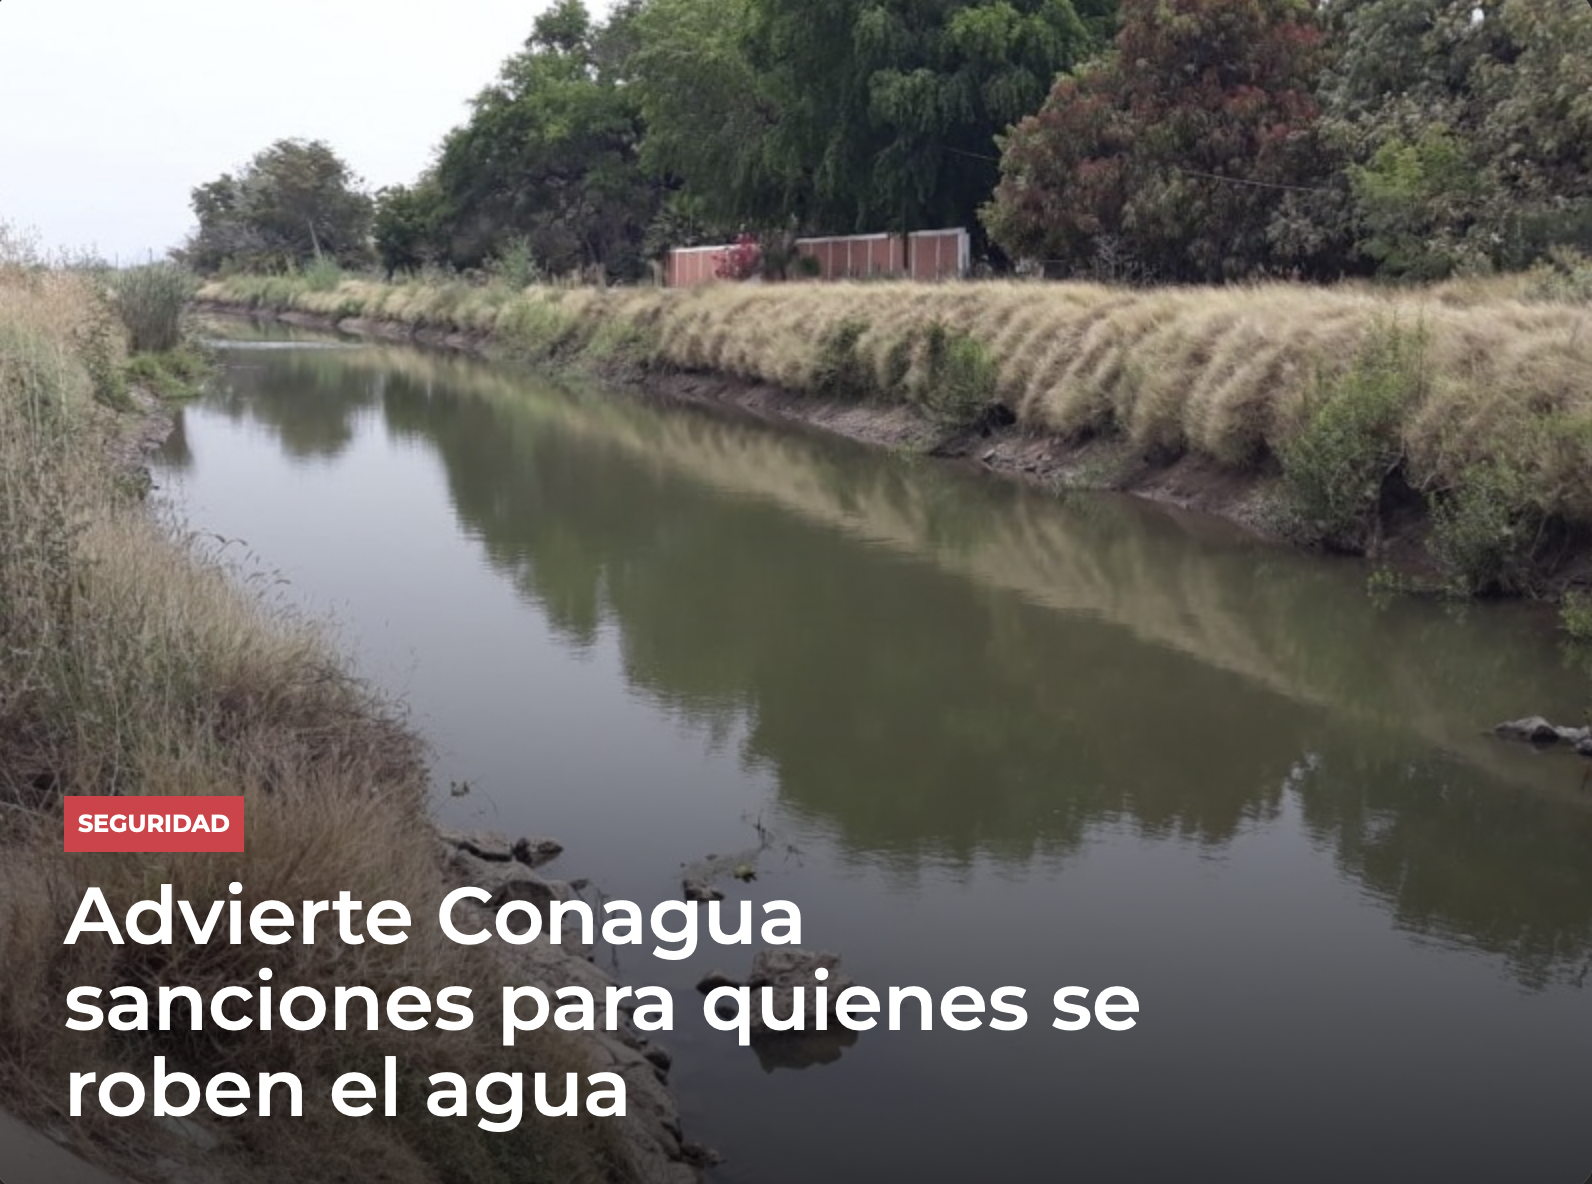 Nacional- Advierte Conagua sanciones para quienes se roben el agua (Meganoticias)